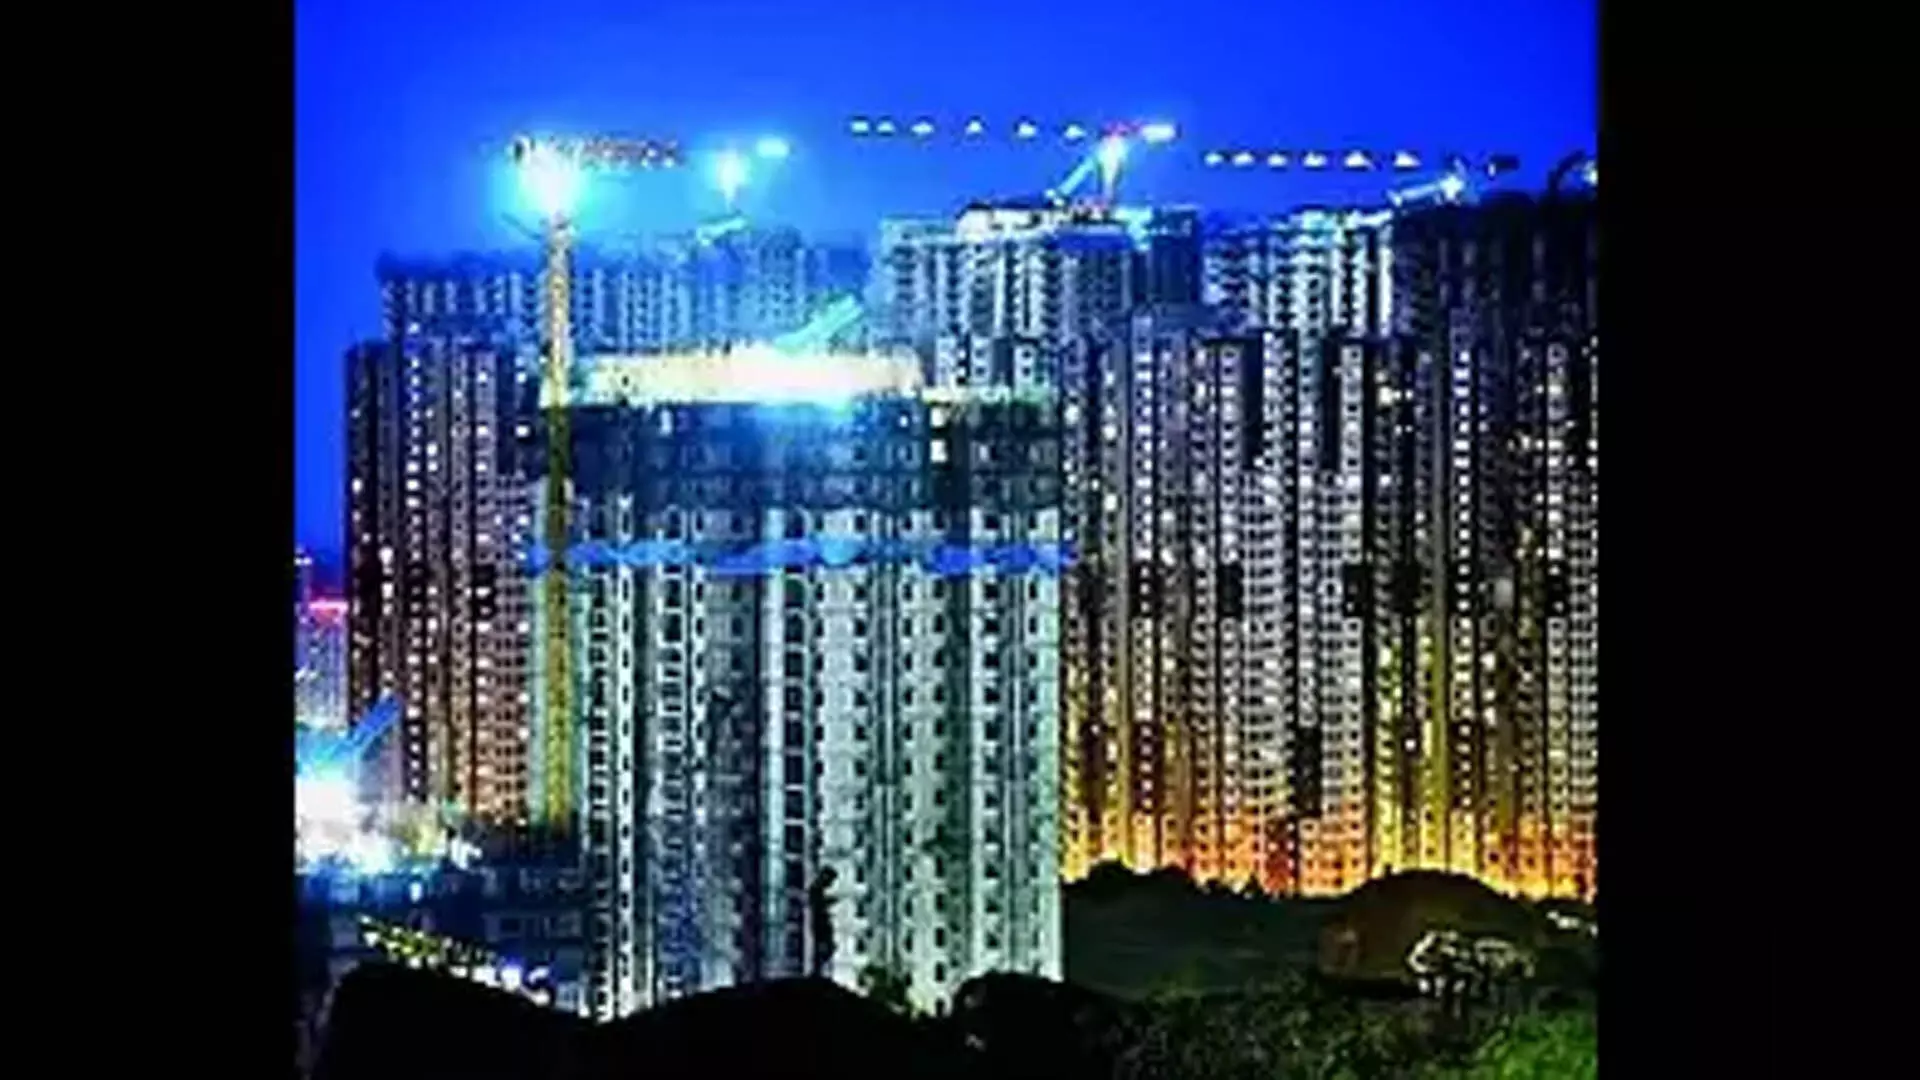 क्रेडाई , हैदराबाद आवास की कीमतें दूसरे उच्चतम स्तर पर पहुंची